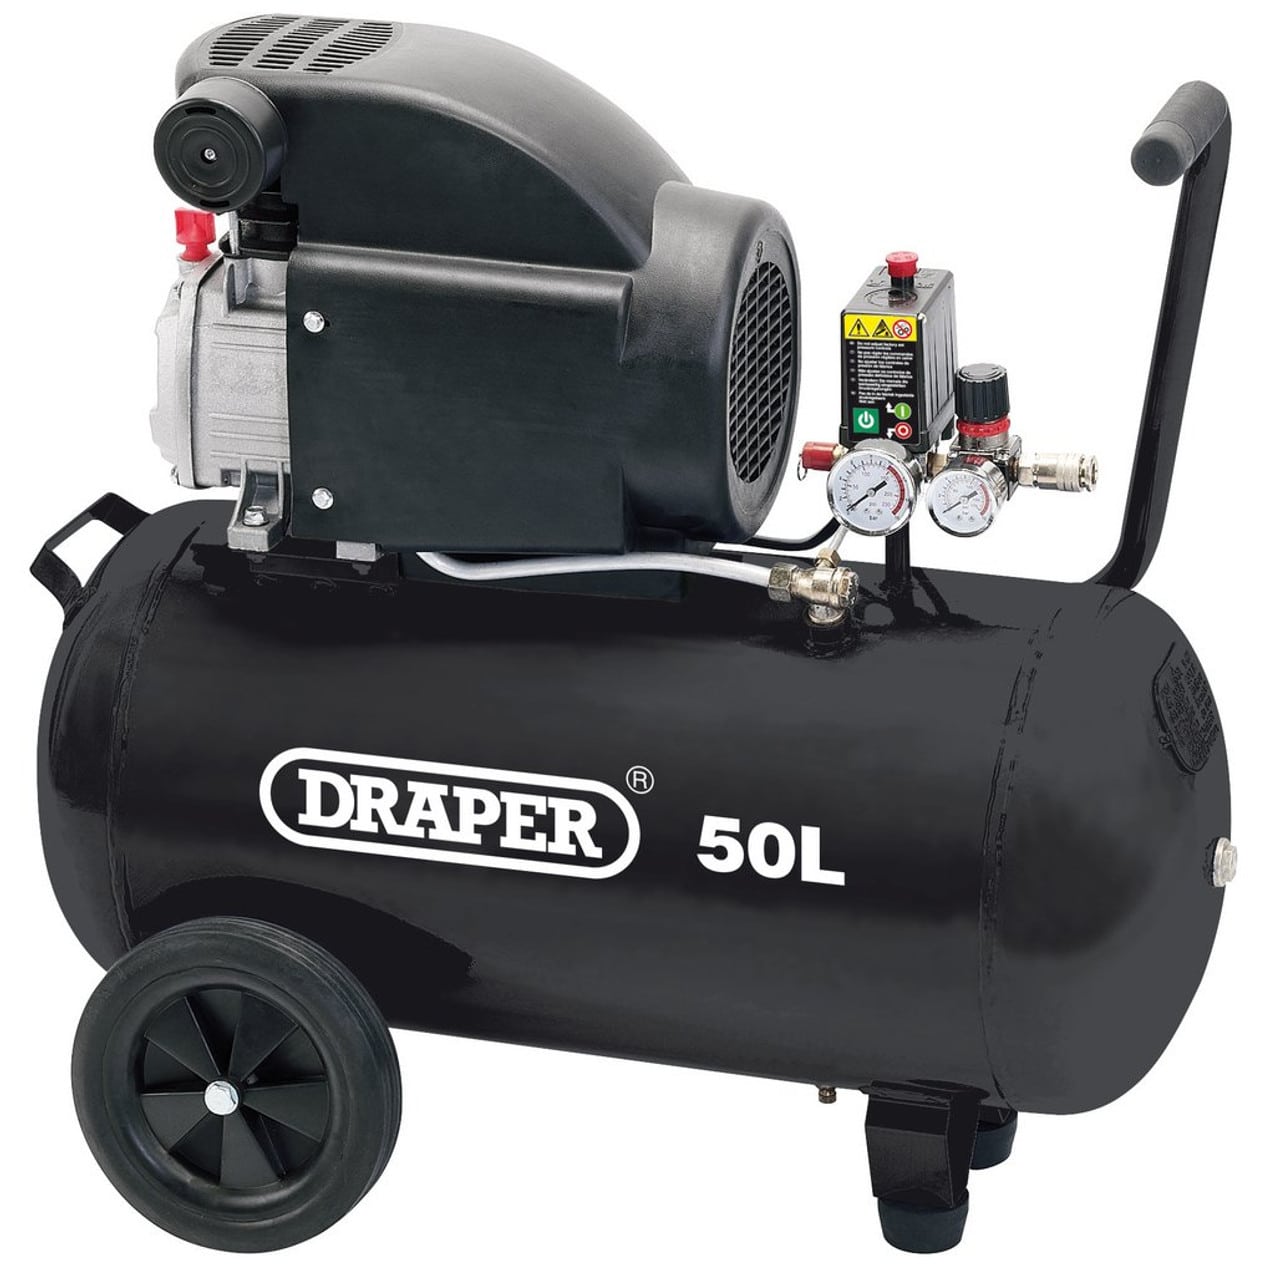 Draper 50L Air Compressor